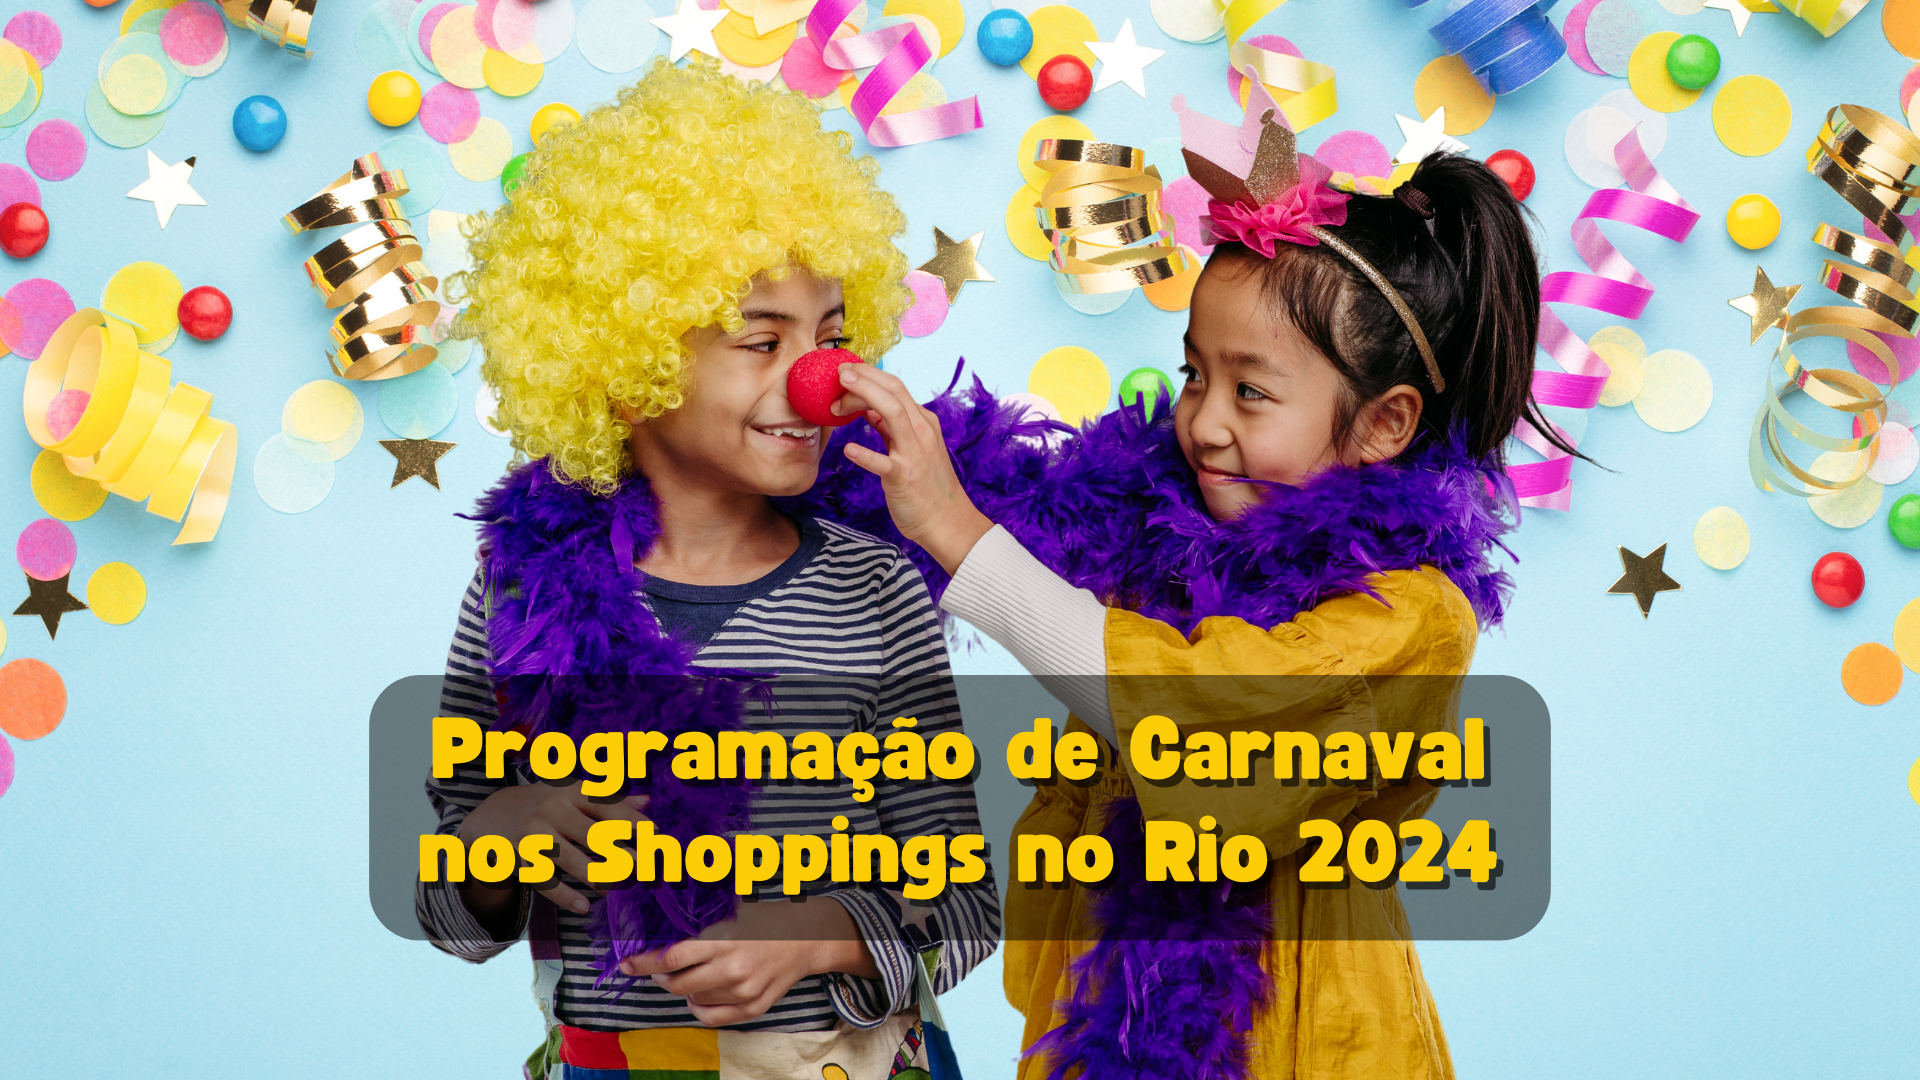 Programação de Carnaval nos Shoppings no Rio 2024 - Pequenos no Rio